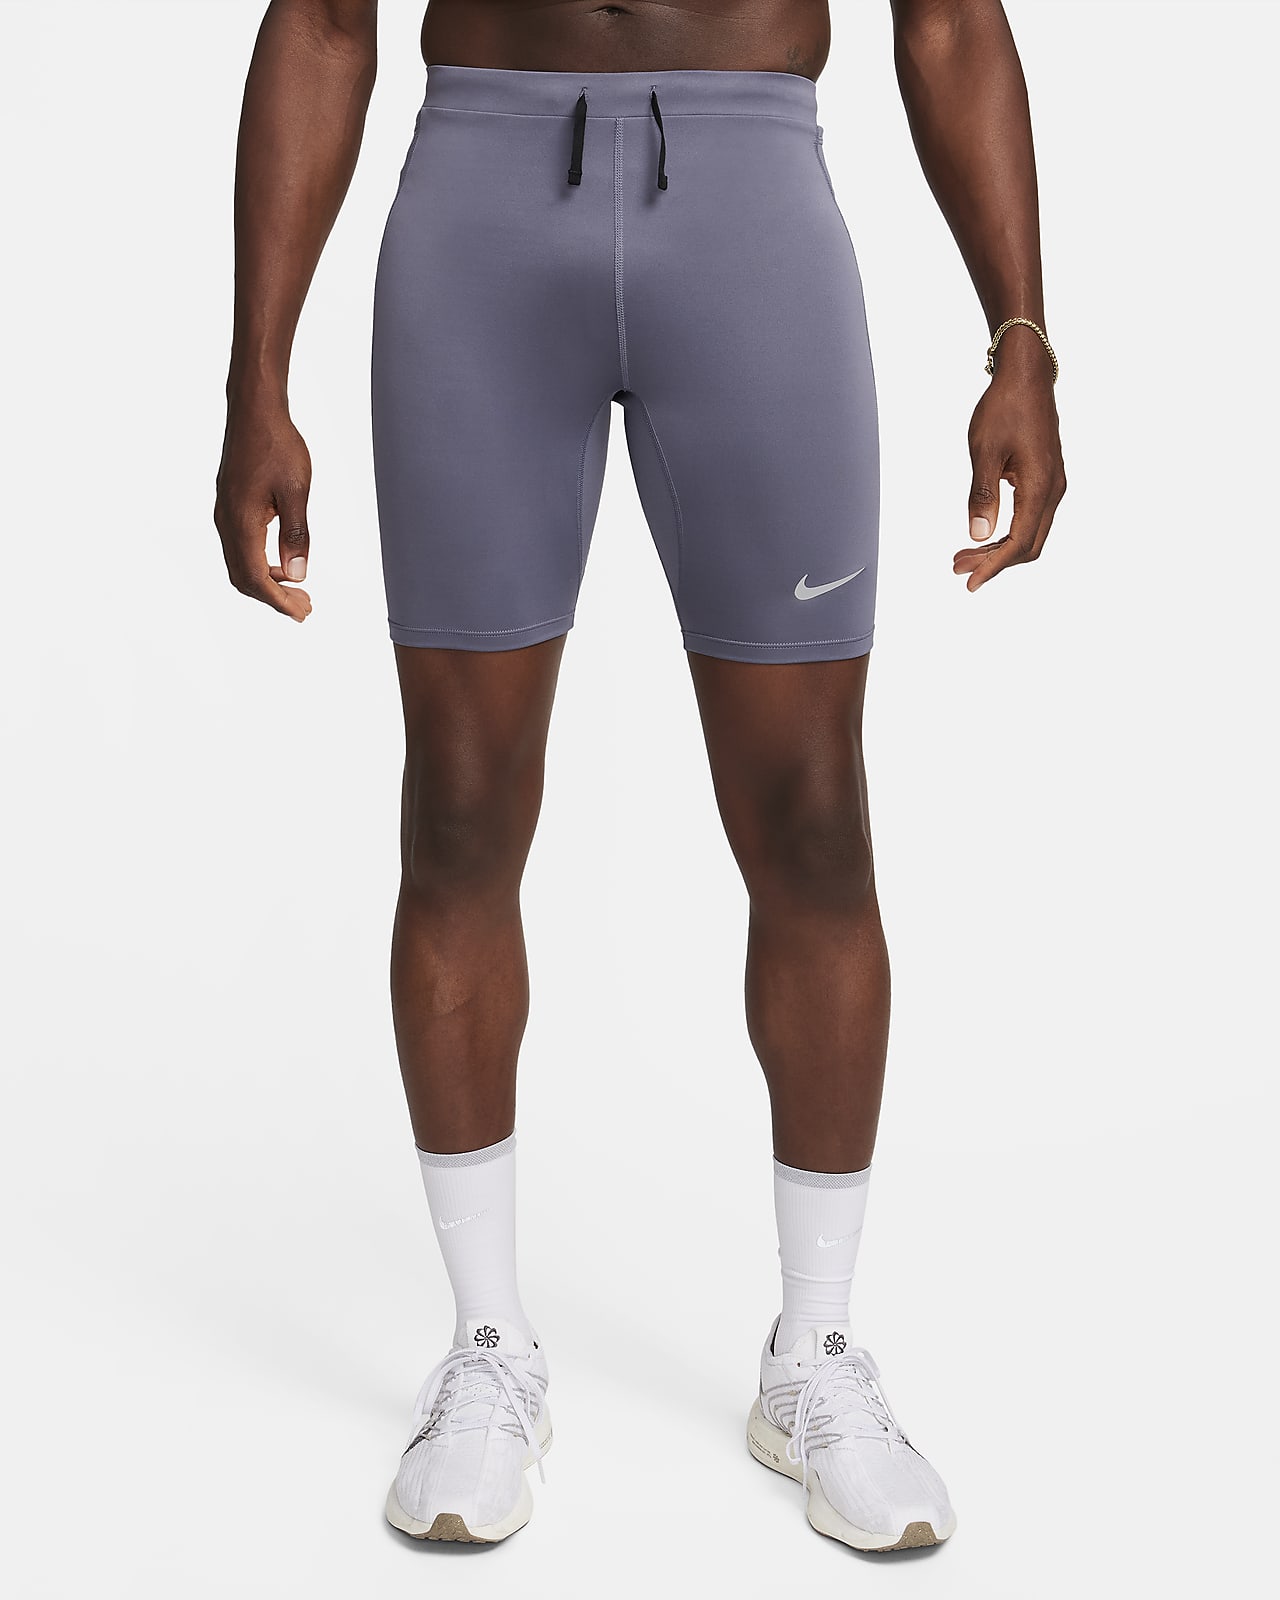 Legging de running demi-longueur avec sous-short Dri-FIT Nike Fast pour homme